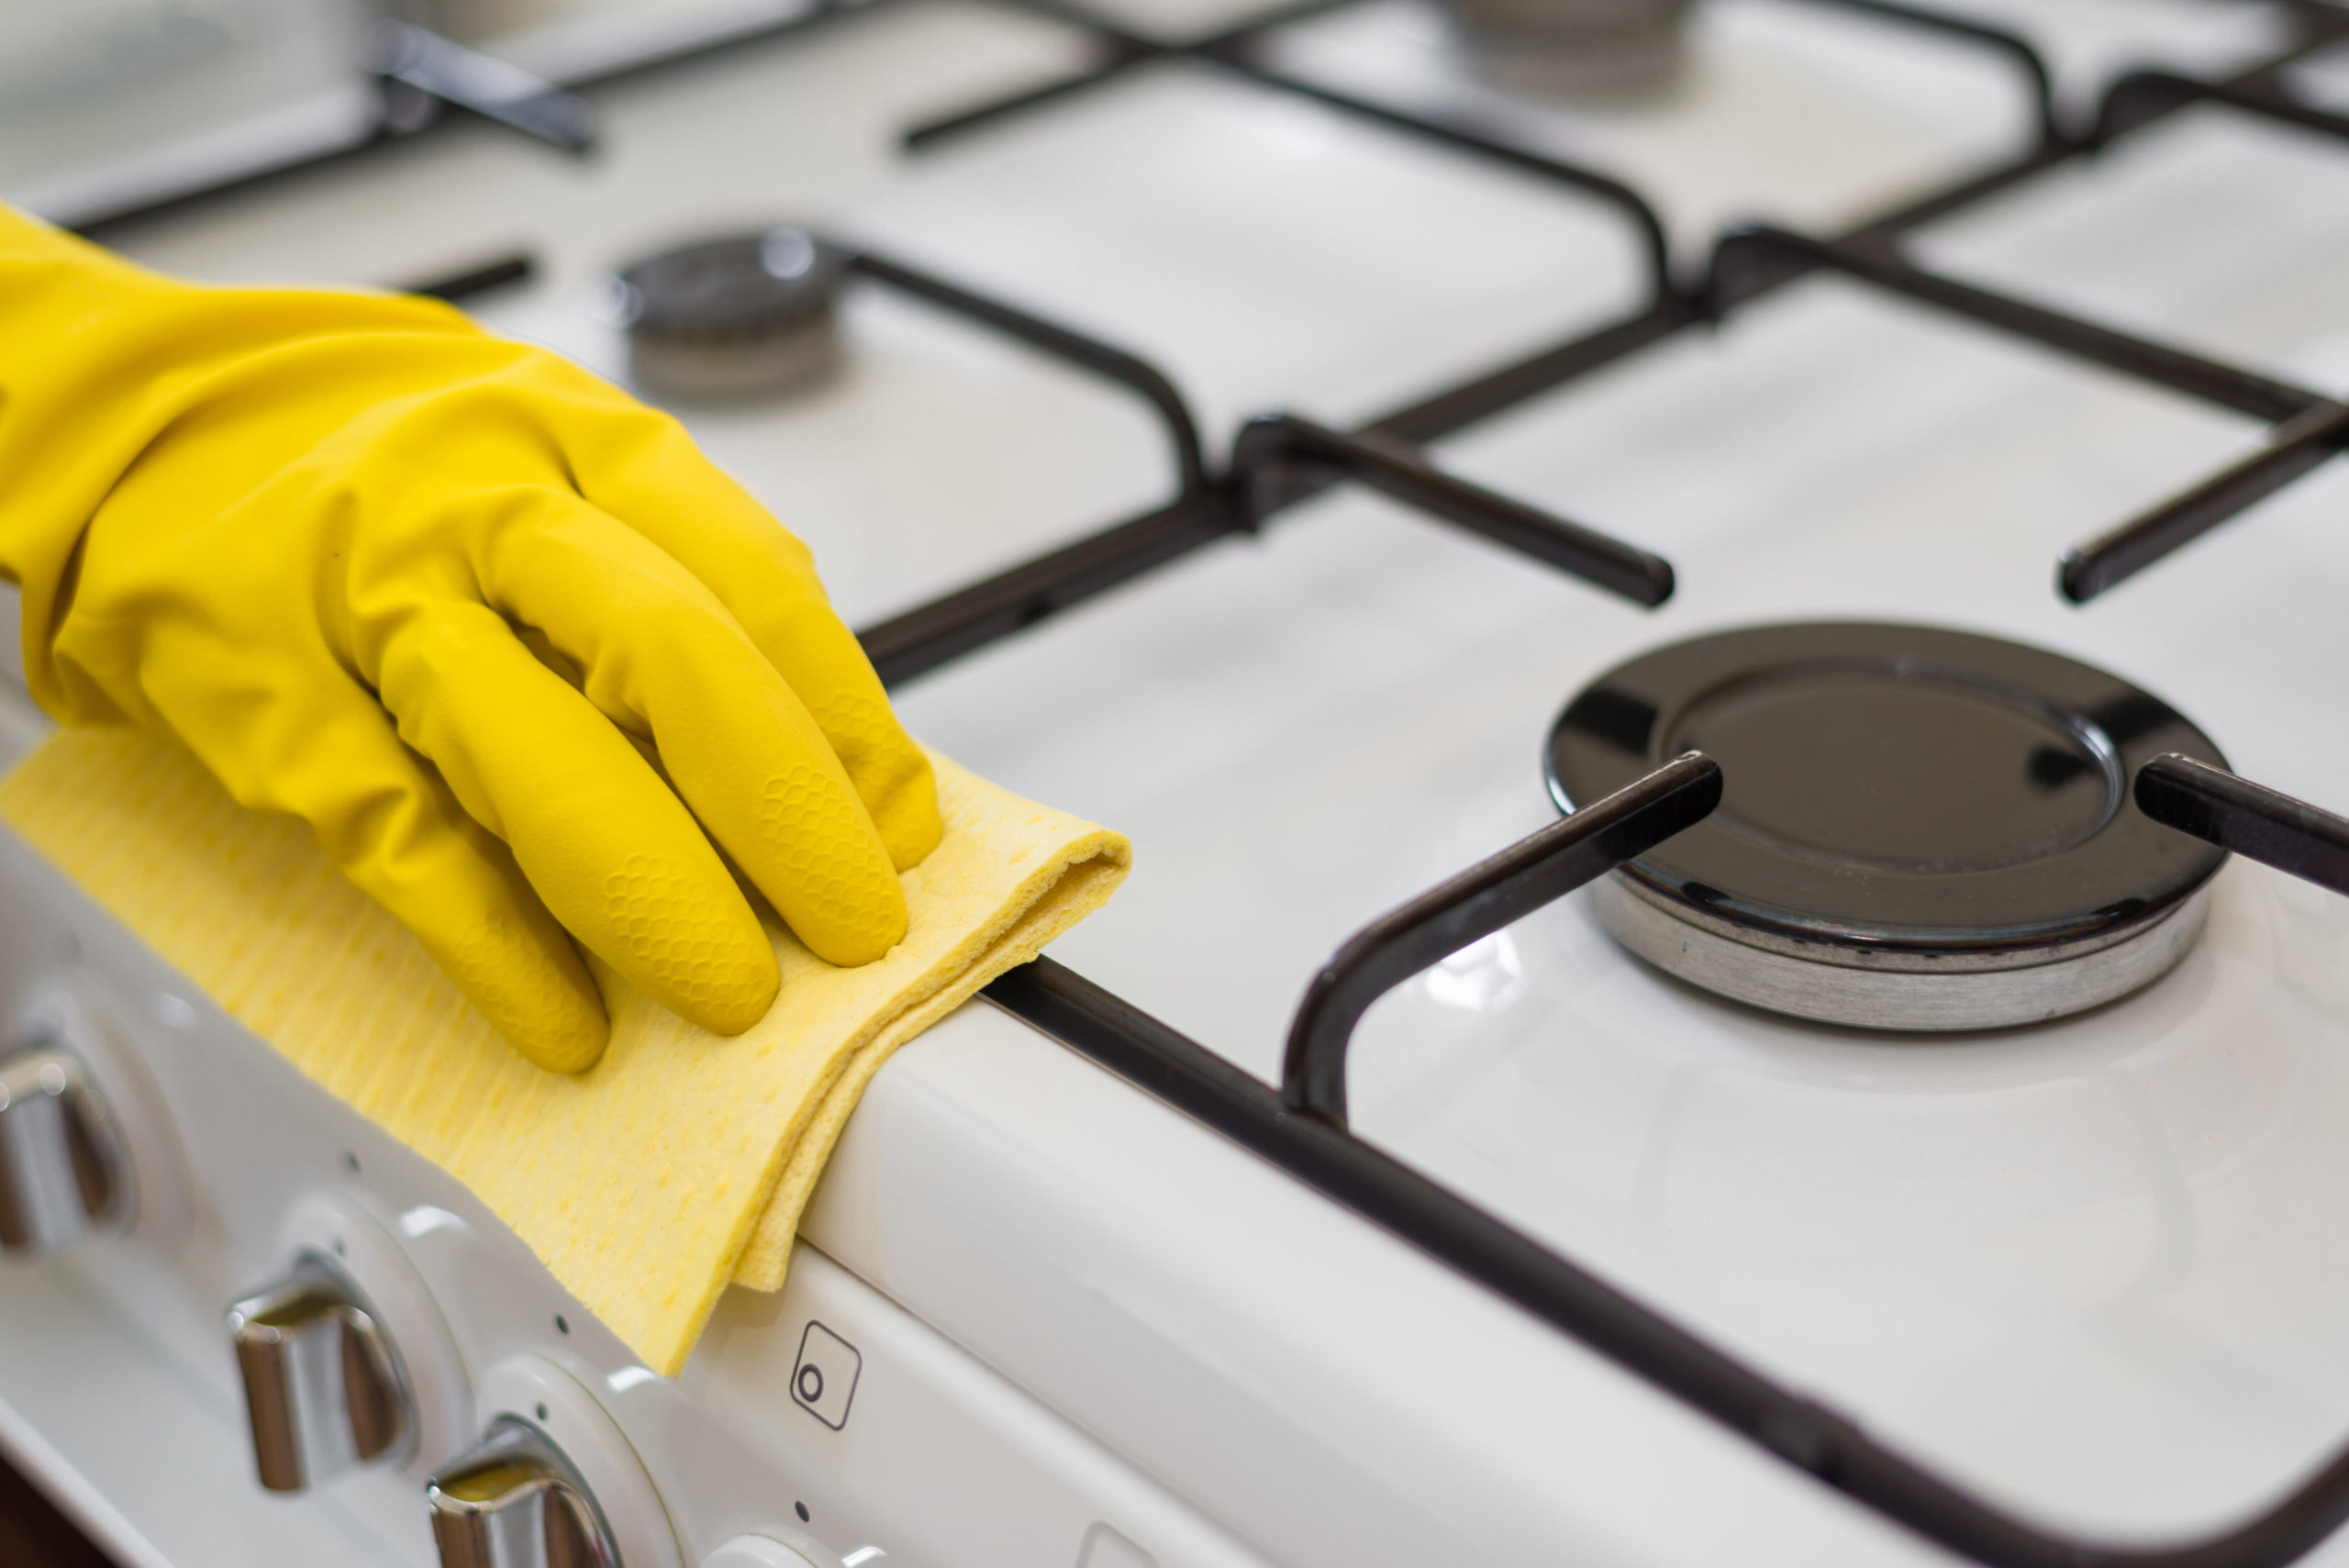 Отмыть решетку газовой плиты от нагара. Мытье плиты. Мытье кухонной плиты. Газовая плита. Чистая плита.